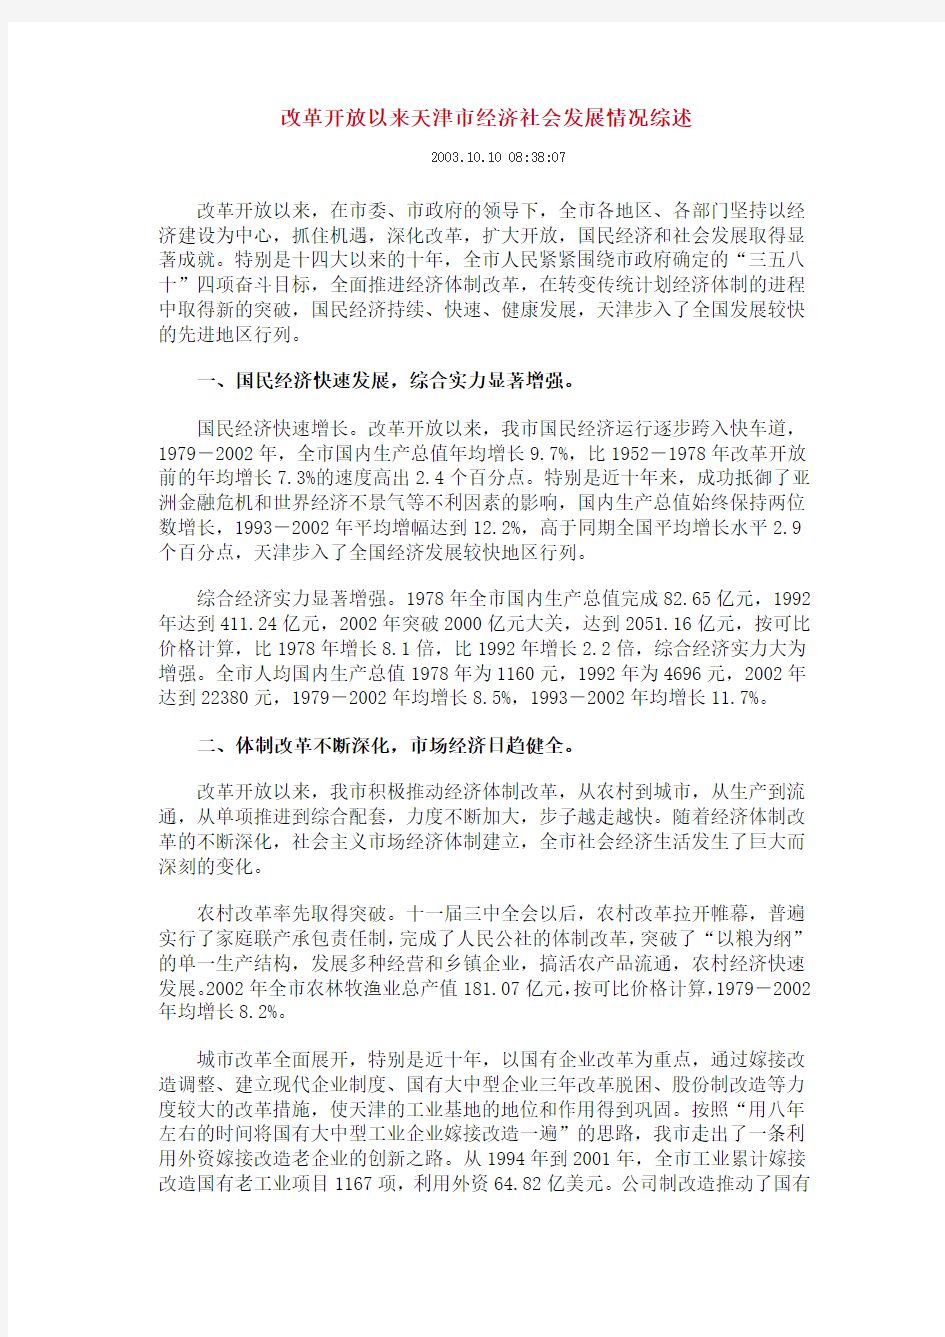 改革开放以来天津市经济社会发展情况综述